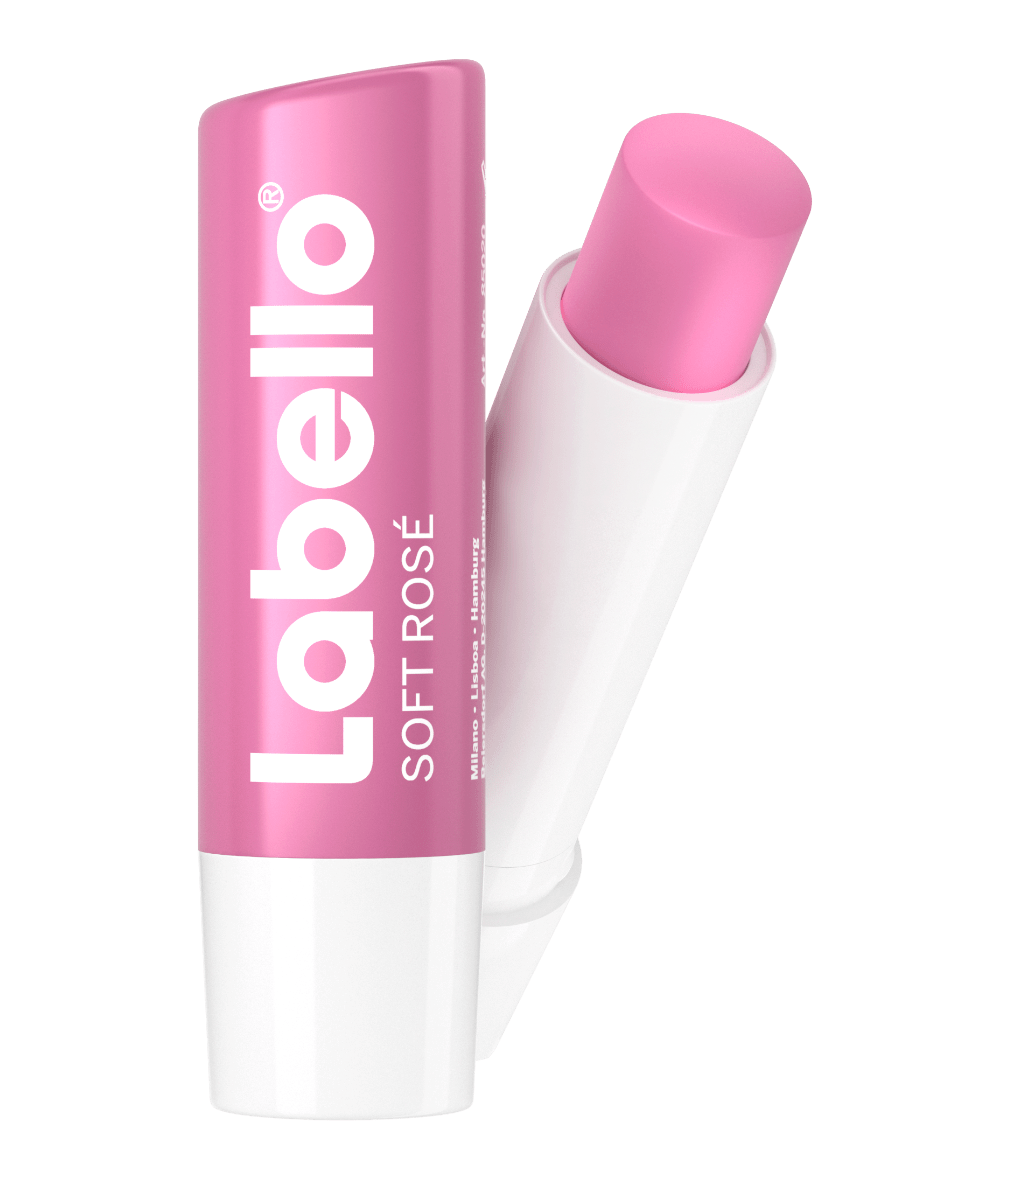 Labello Soft Rosé